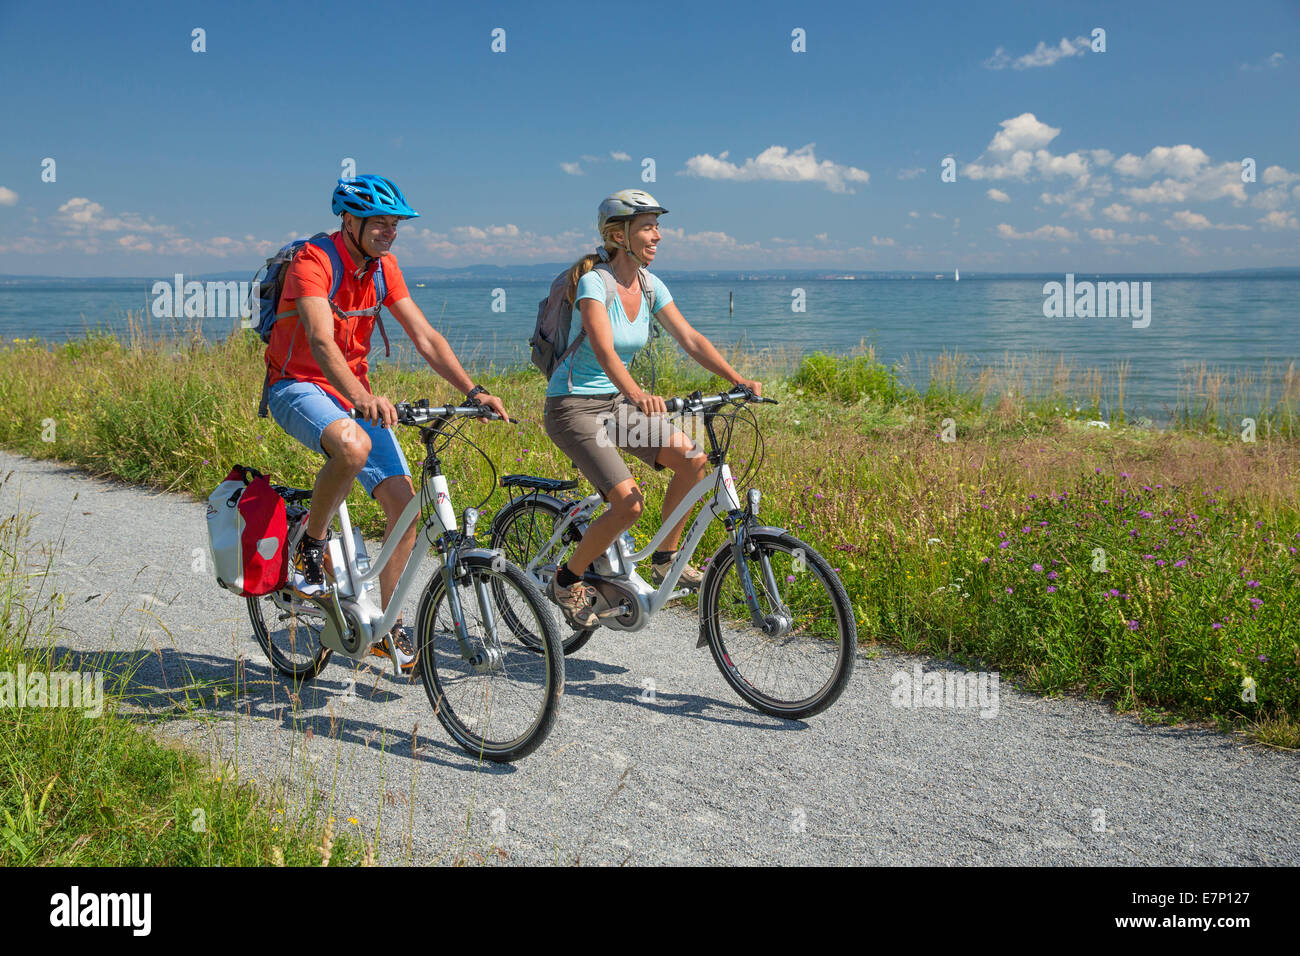 El lago de Constanza, Biker, bocina, ruta de corazón, bicicleta, bicicletas, bicicleta, montar en bicicleta, cantón, TG, Turgovia, Suiza, Europa, c Foto de stock